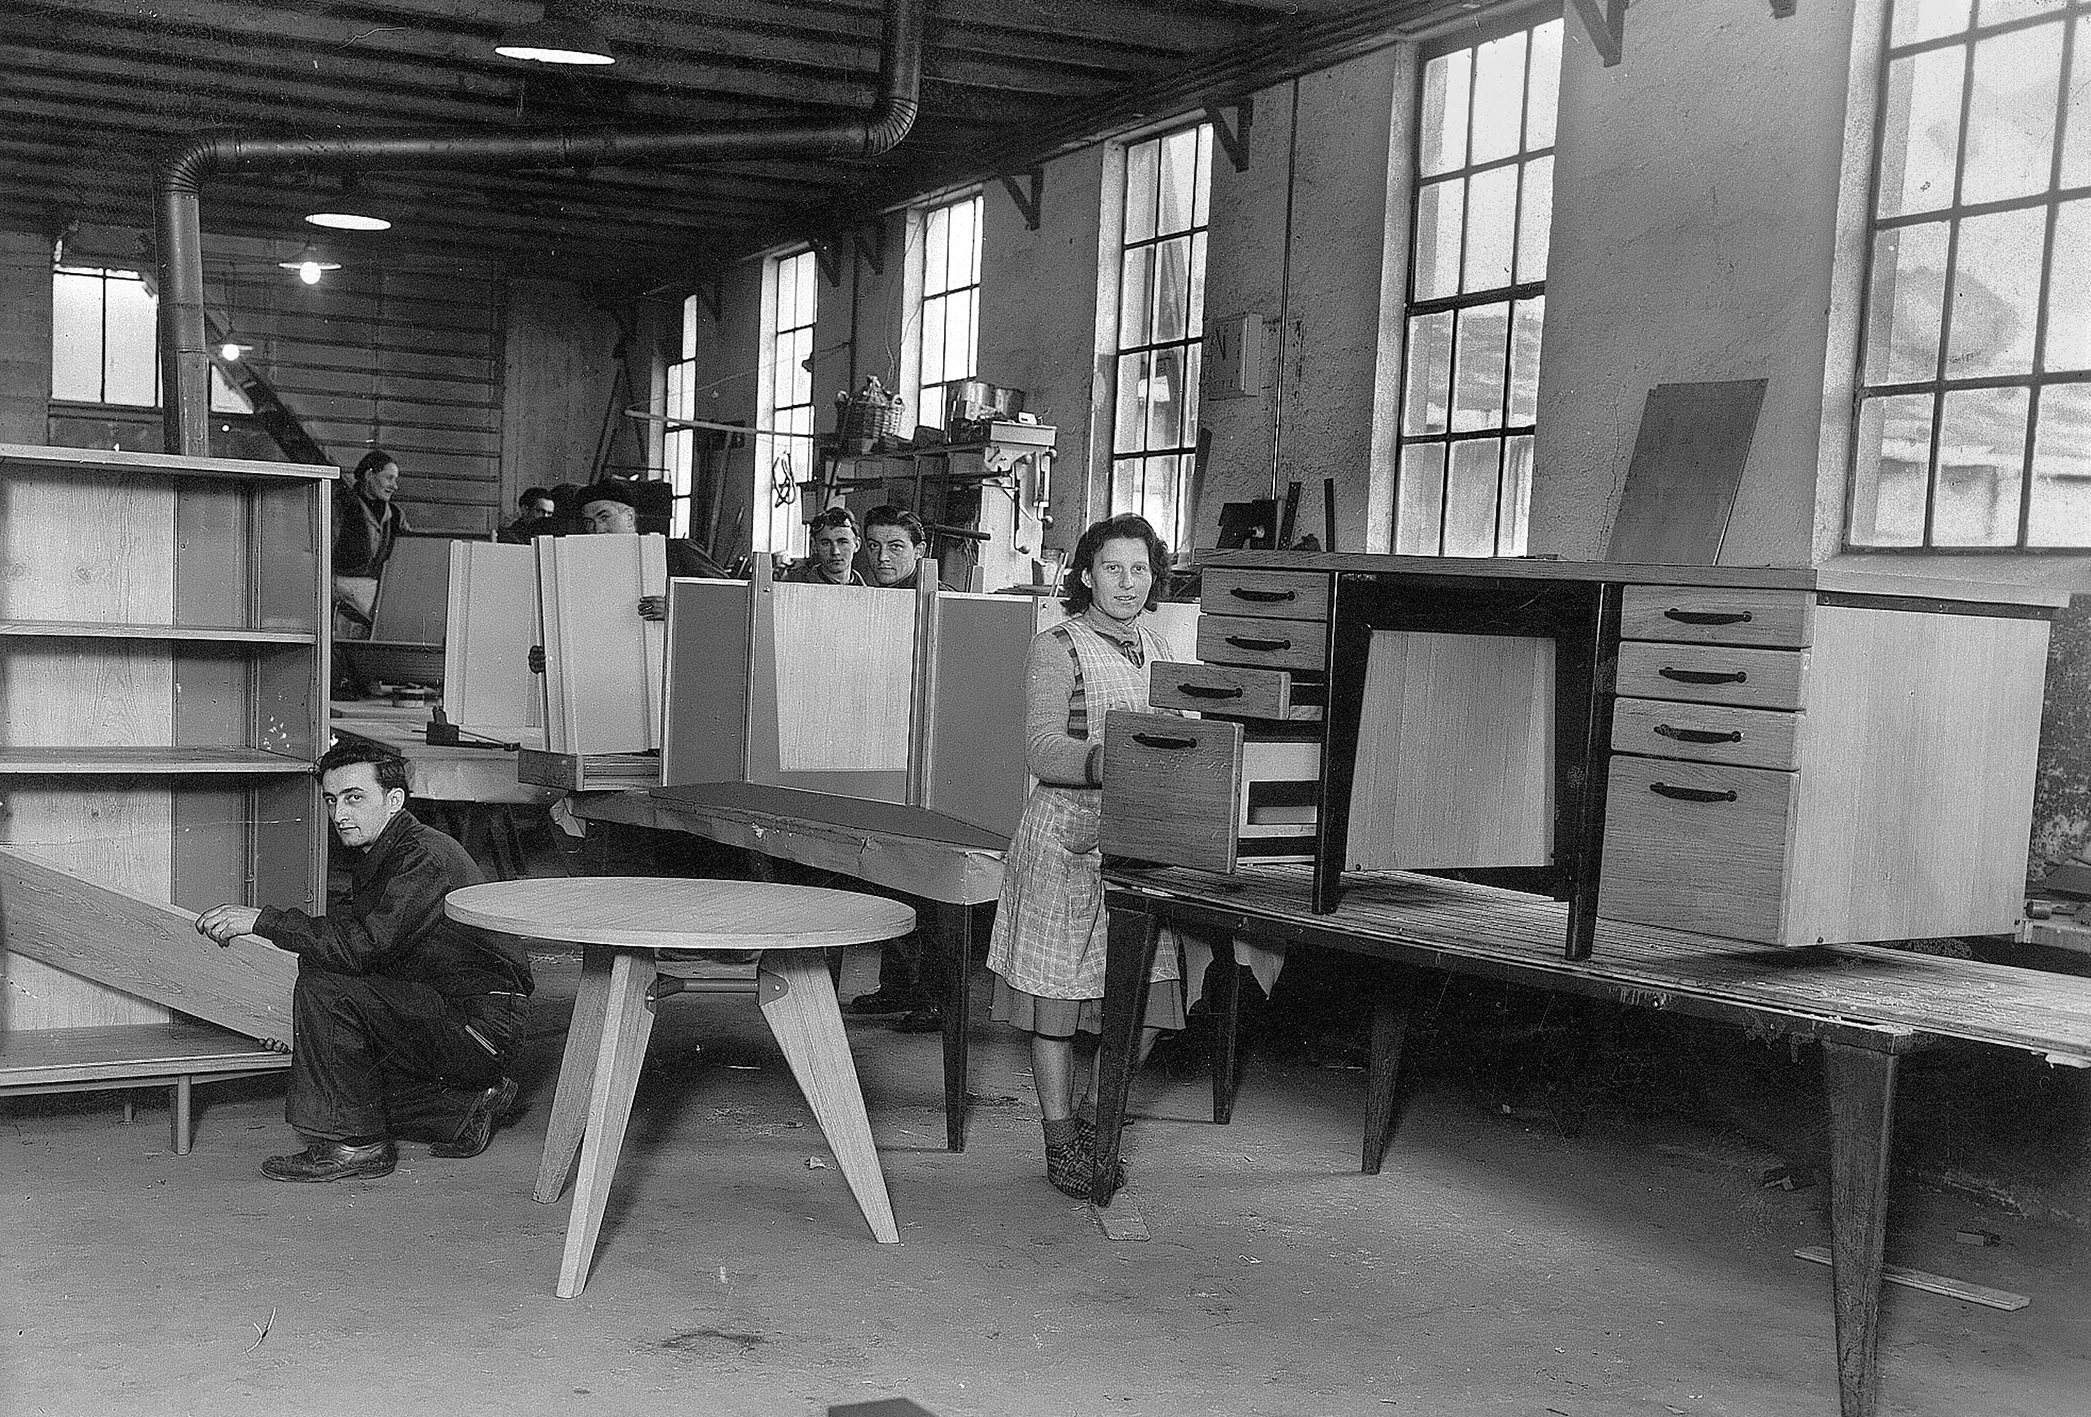 Ateliers Jean Prouvé, rue des Jardiniers, Nancy. The furniture assembly workshop, ca. 1946.